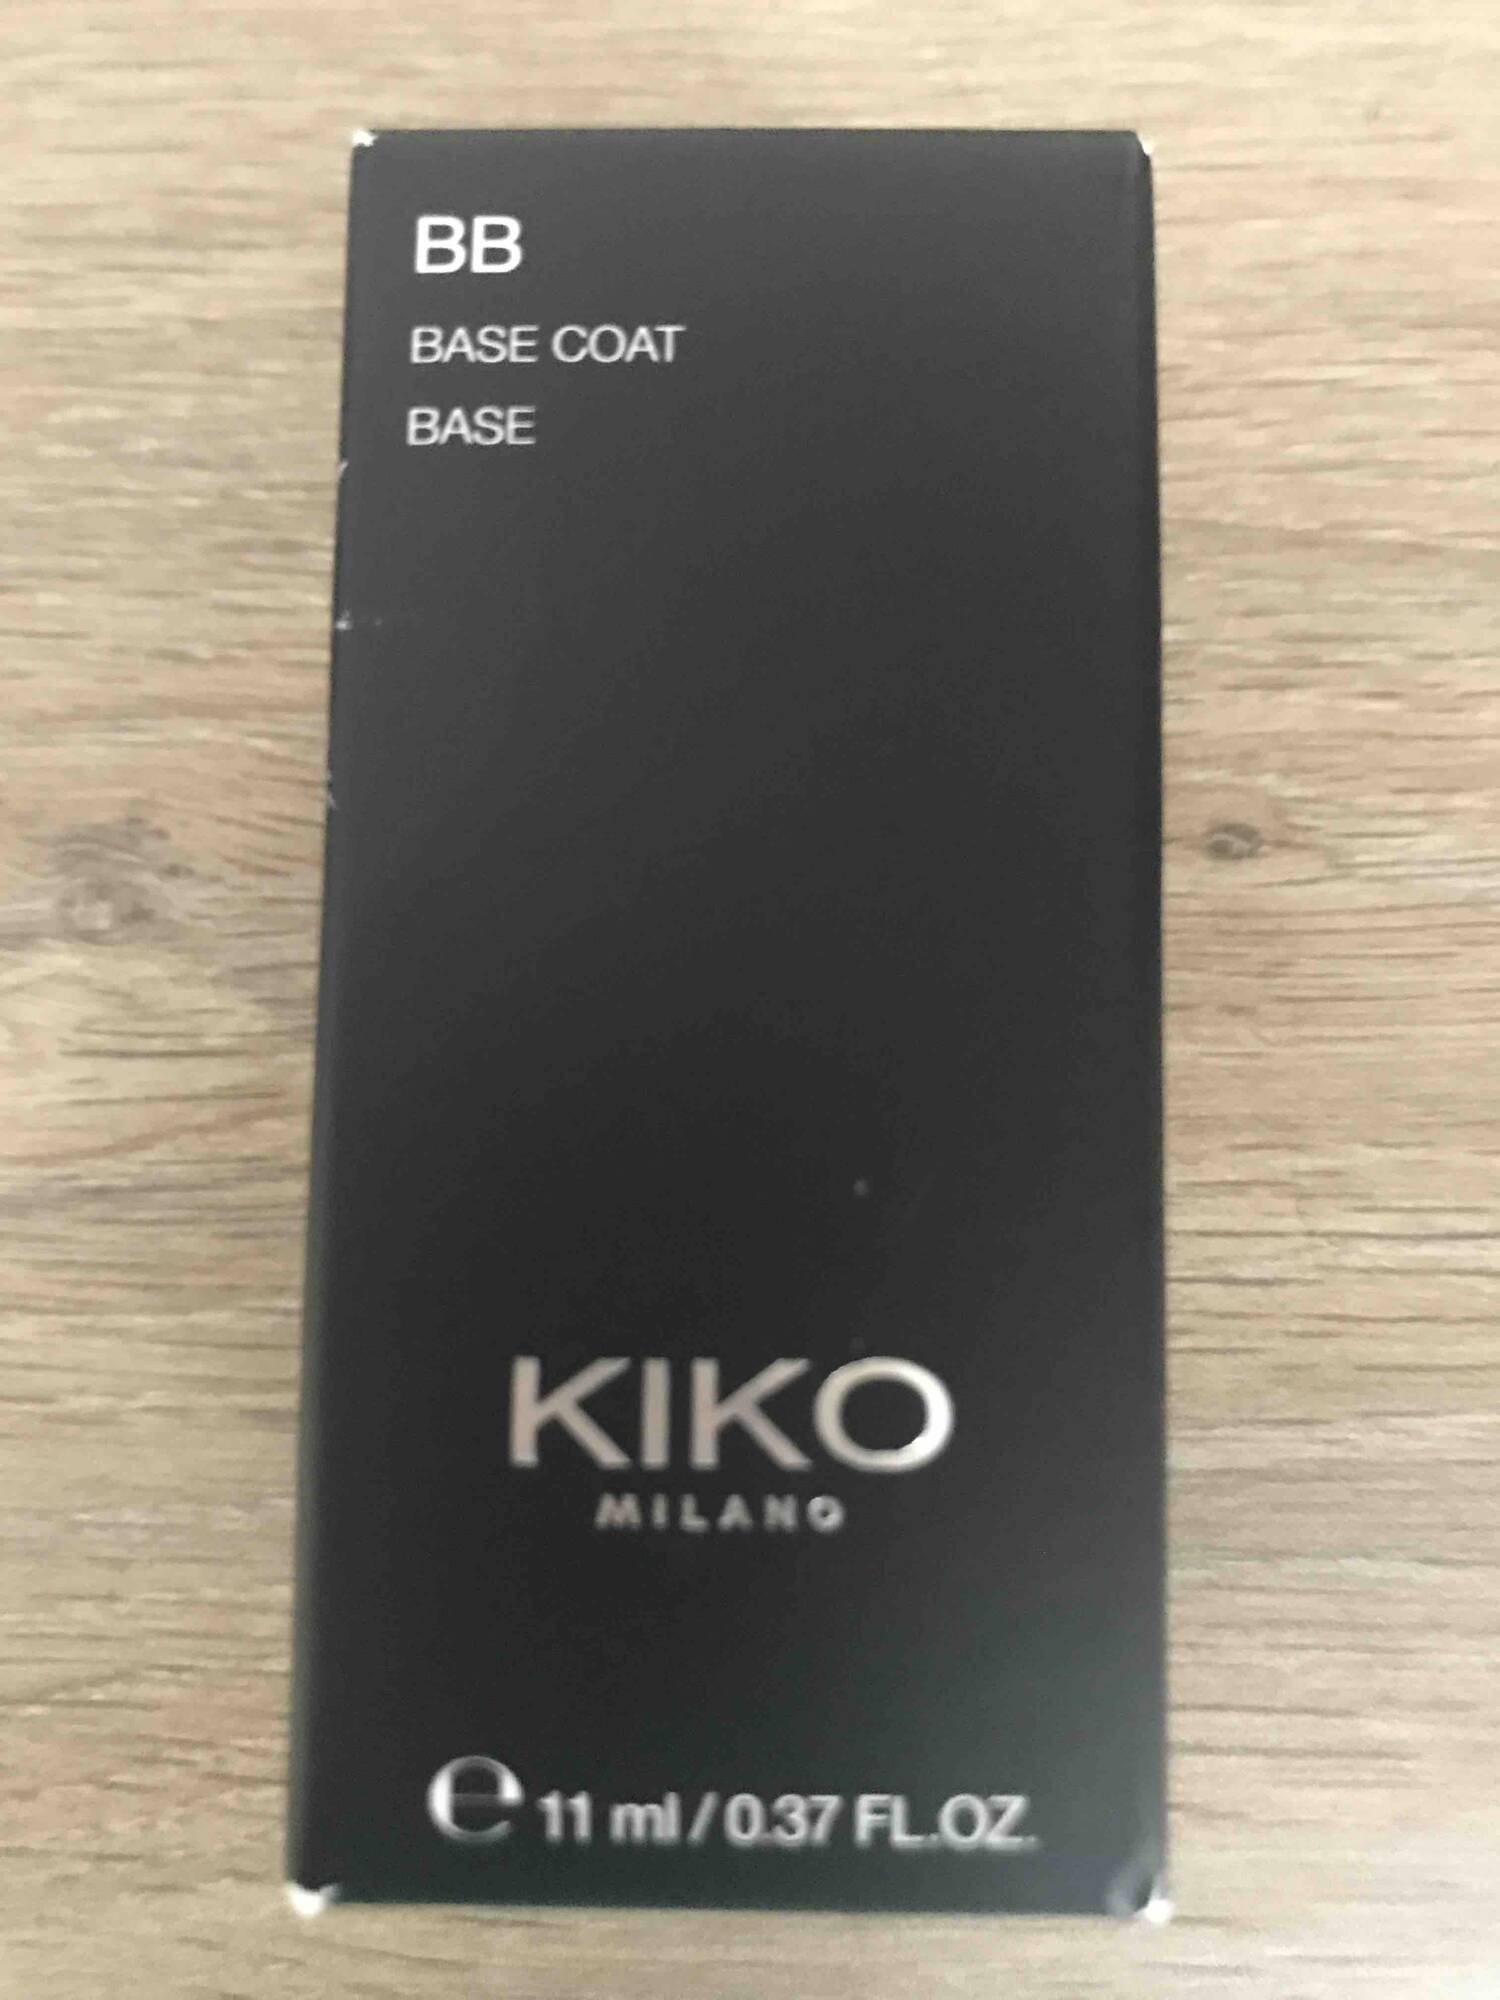 KIKO - BB base coat